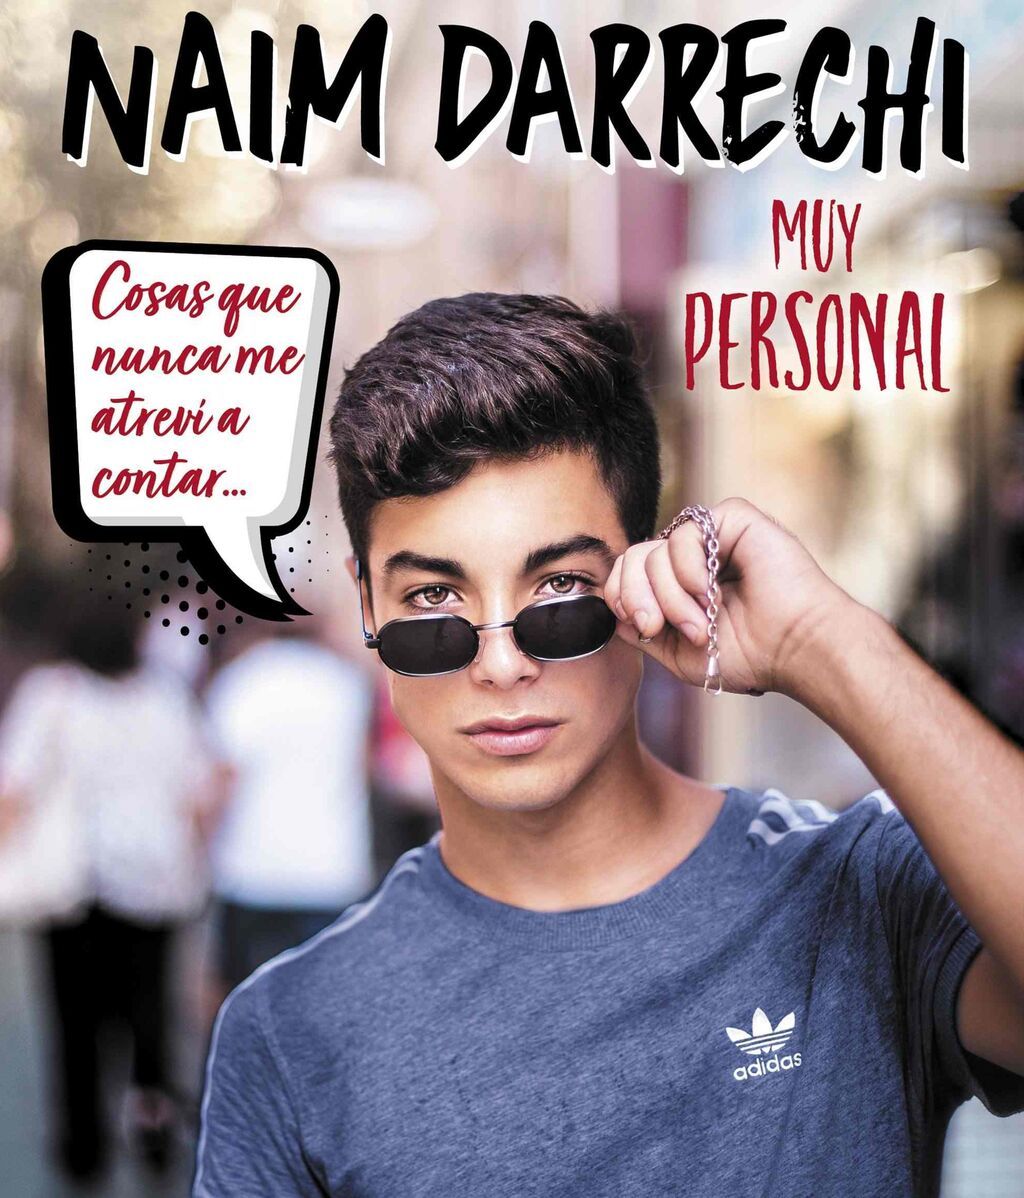 Portada del libro 'Muy Personal' de Naim Darrechi editado por Destino